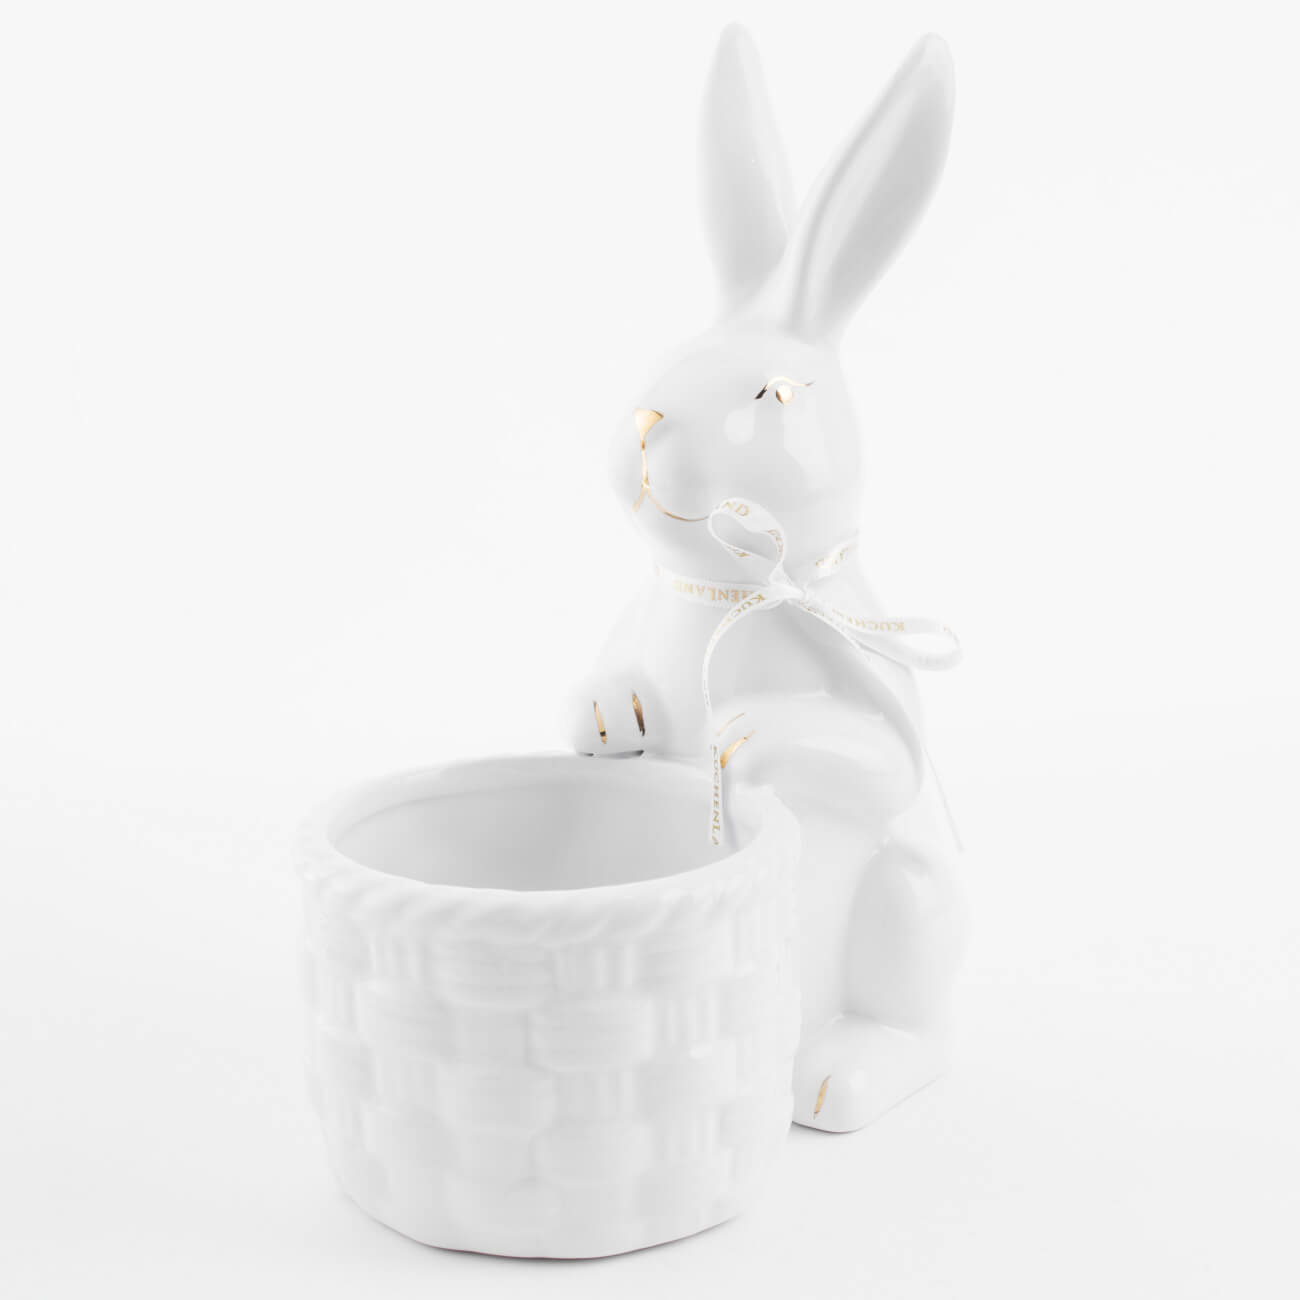 Конфетница, 18x23 см, керамика, бело-золотистая, Кролик с плетенной корзиной, Easter gold конфетница 18x23 см керамика бело золотистая кролик с плетенной корзиной easter gold